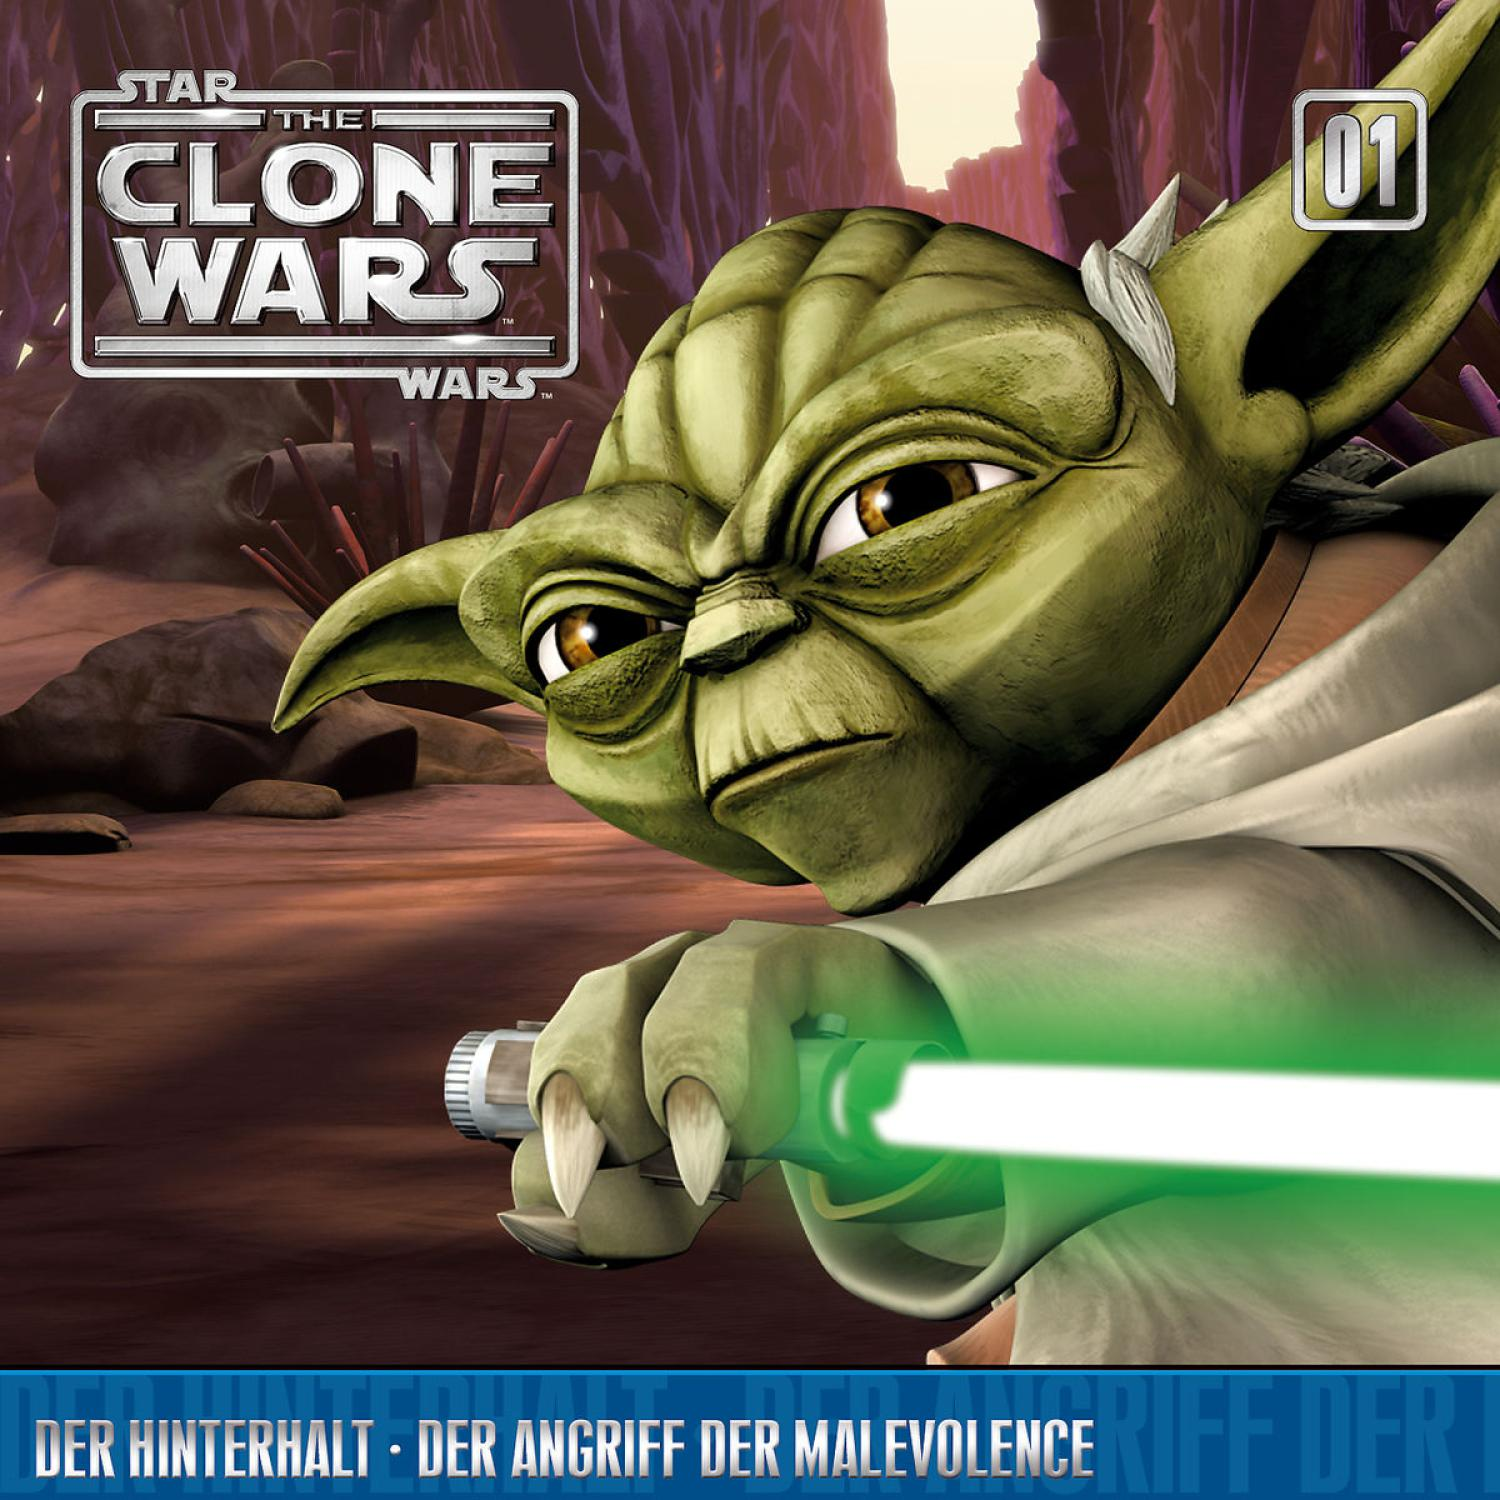 Der Star Angriff Der - Malevolence der Wars Wars / Clone The Hinterhalt (CD) 01: -